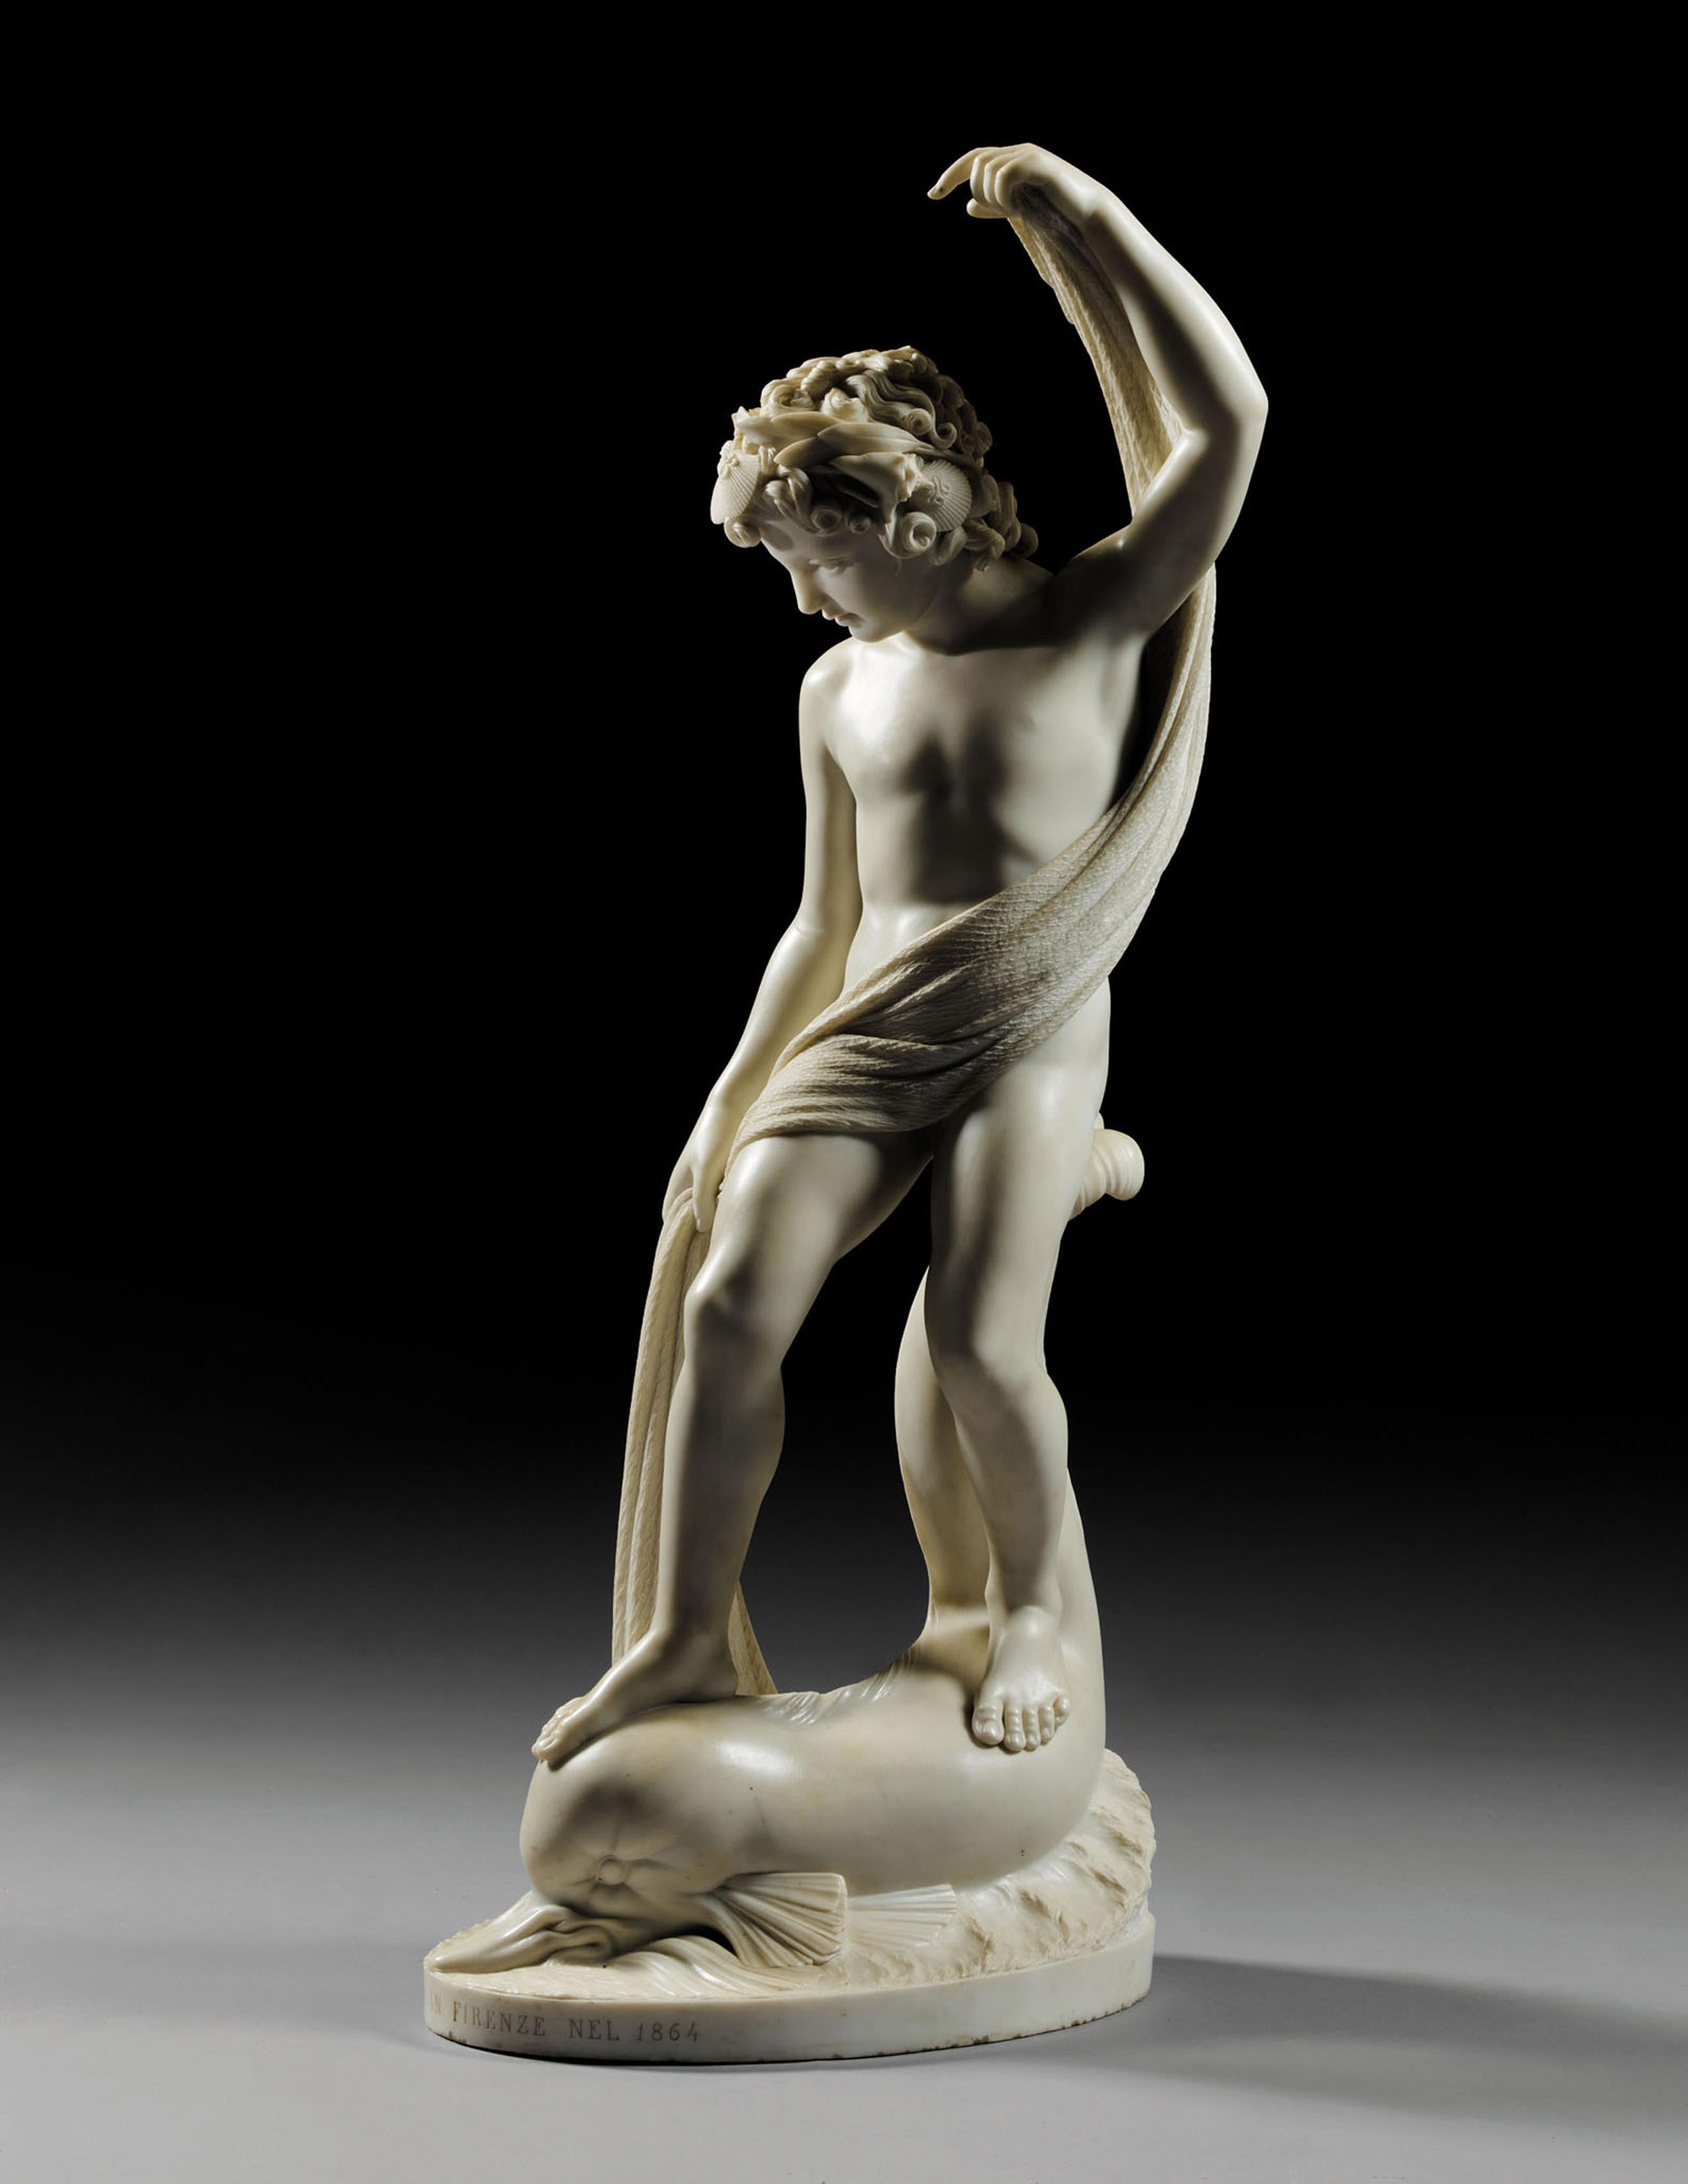 Le garçon pêcheur suprême statue en marbre de Carrare